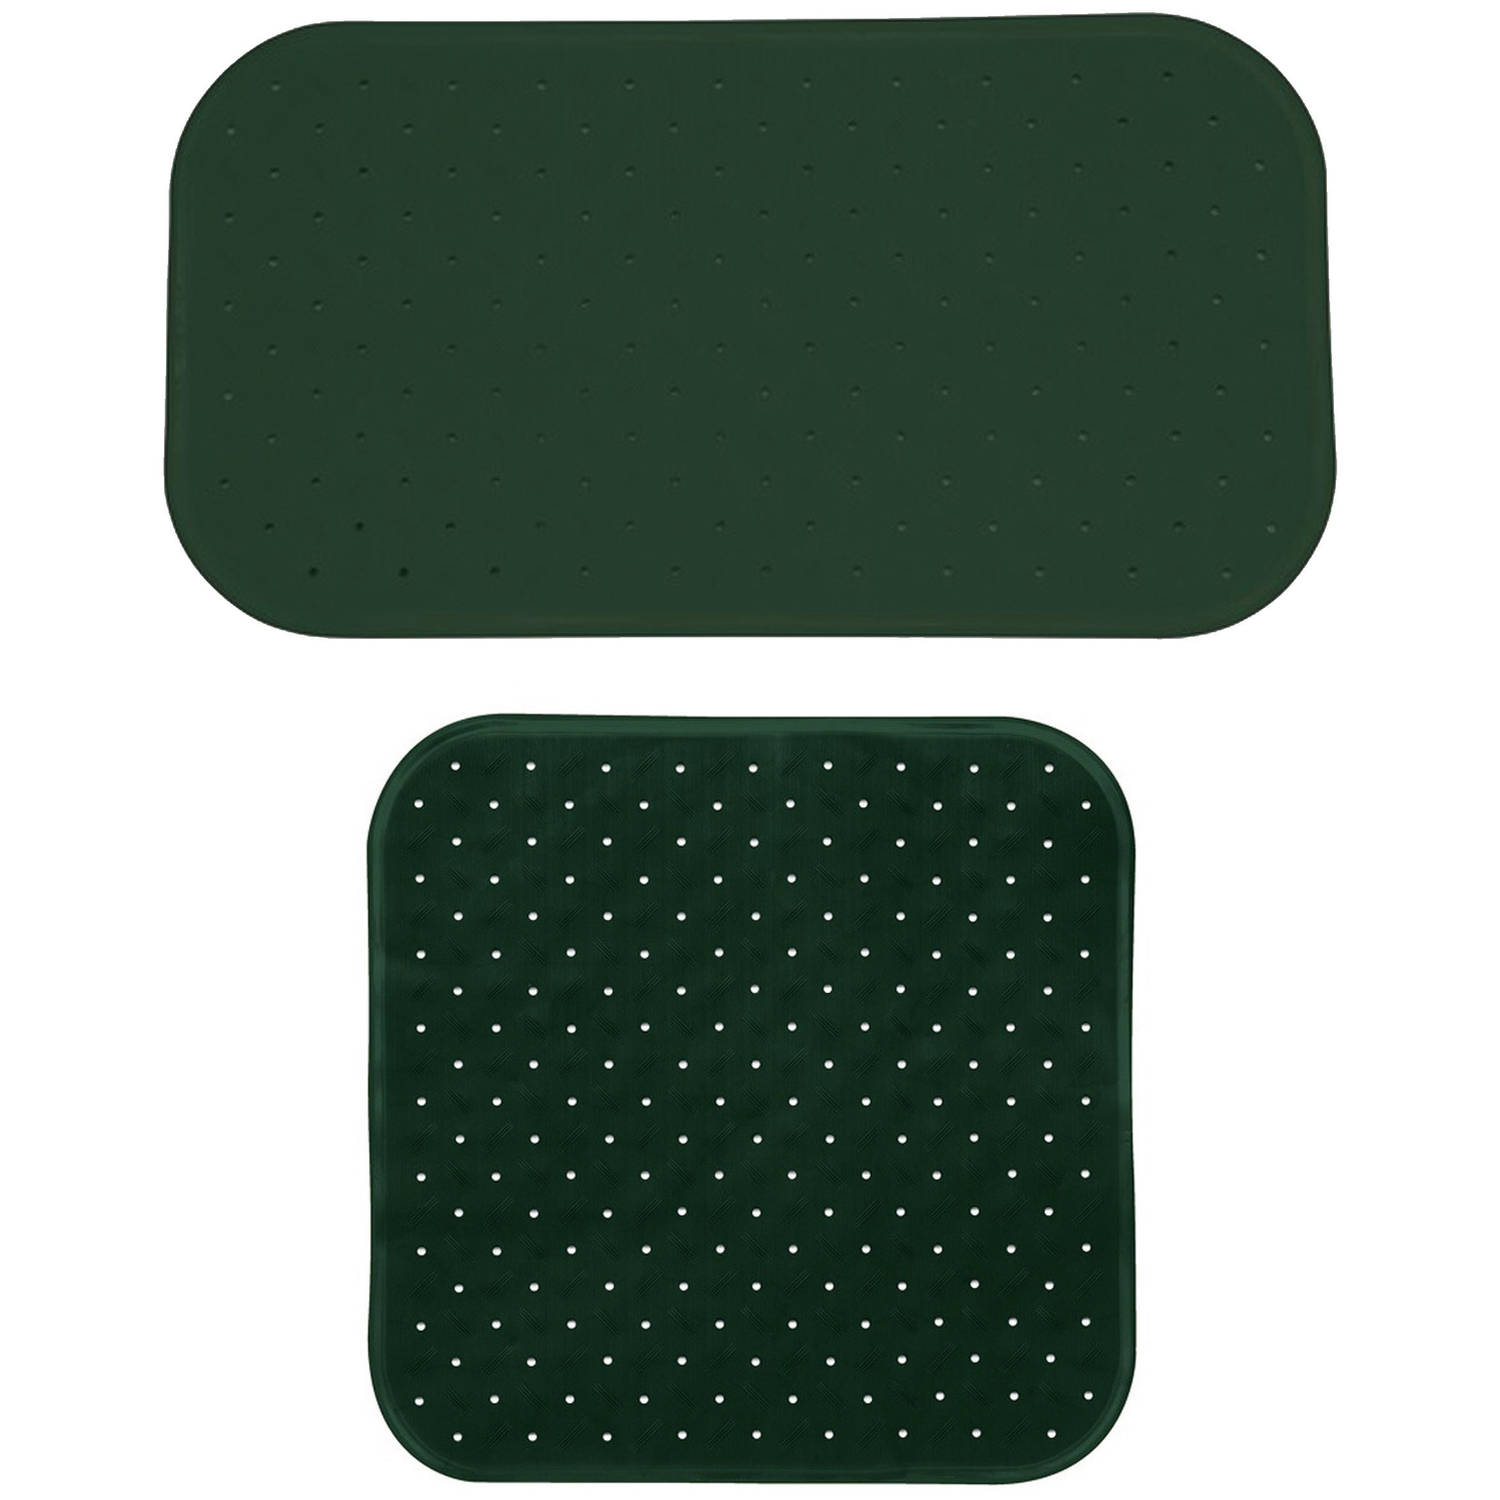 MSV Douche-bad anti-slip matten set badkamer rubber 2x stuks donkergroen 2 formaten Badmatjes